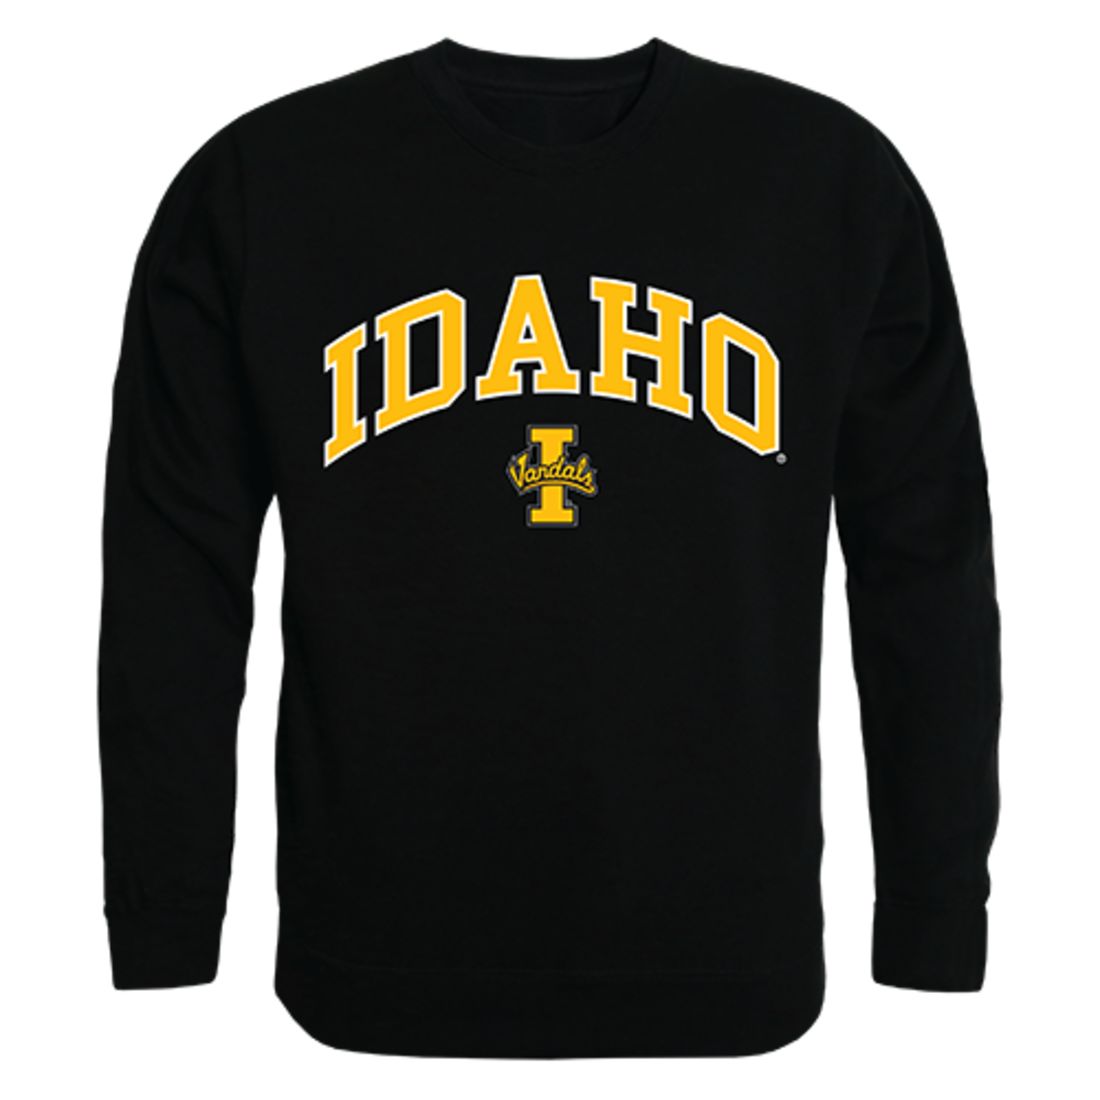 University of Idaho Campus Crewneck Pullover Sweatshirt Sweater Black-Campus-Wardrobe